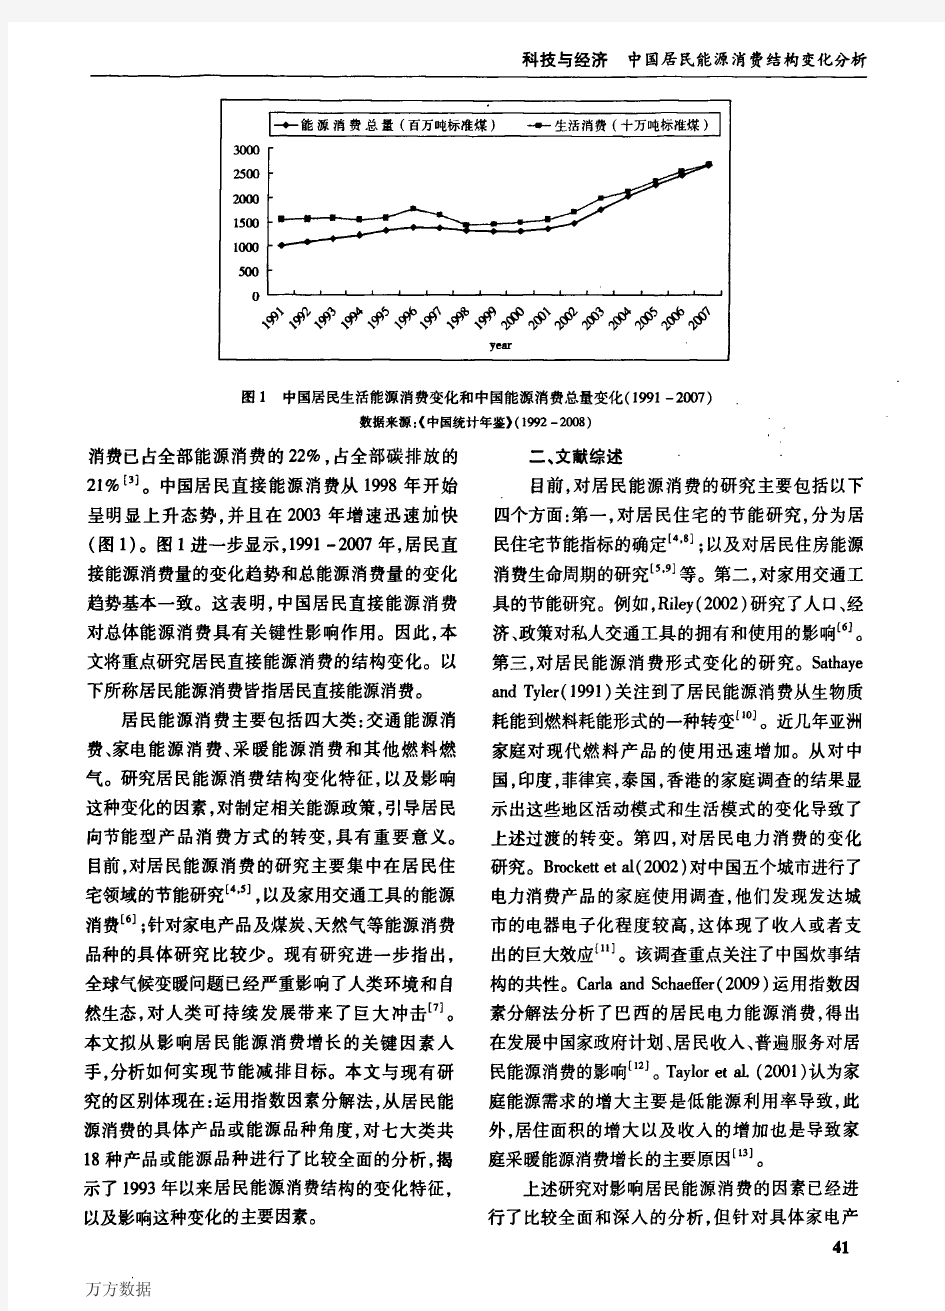 中国居民能源消费结构变化分析